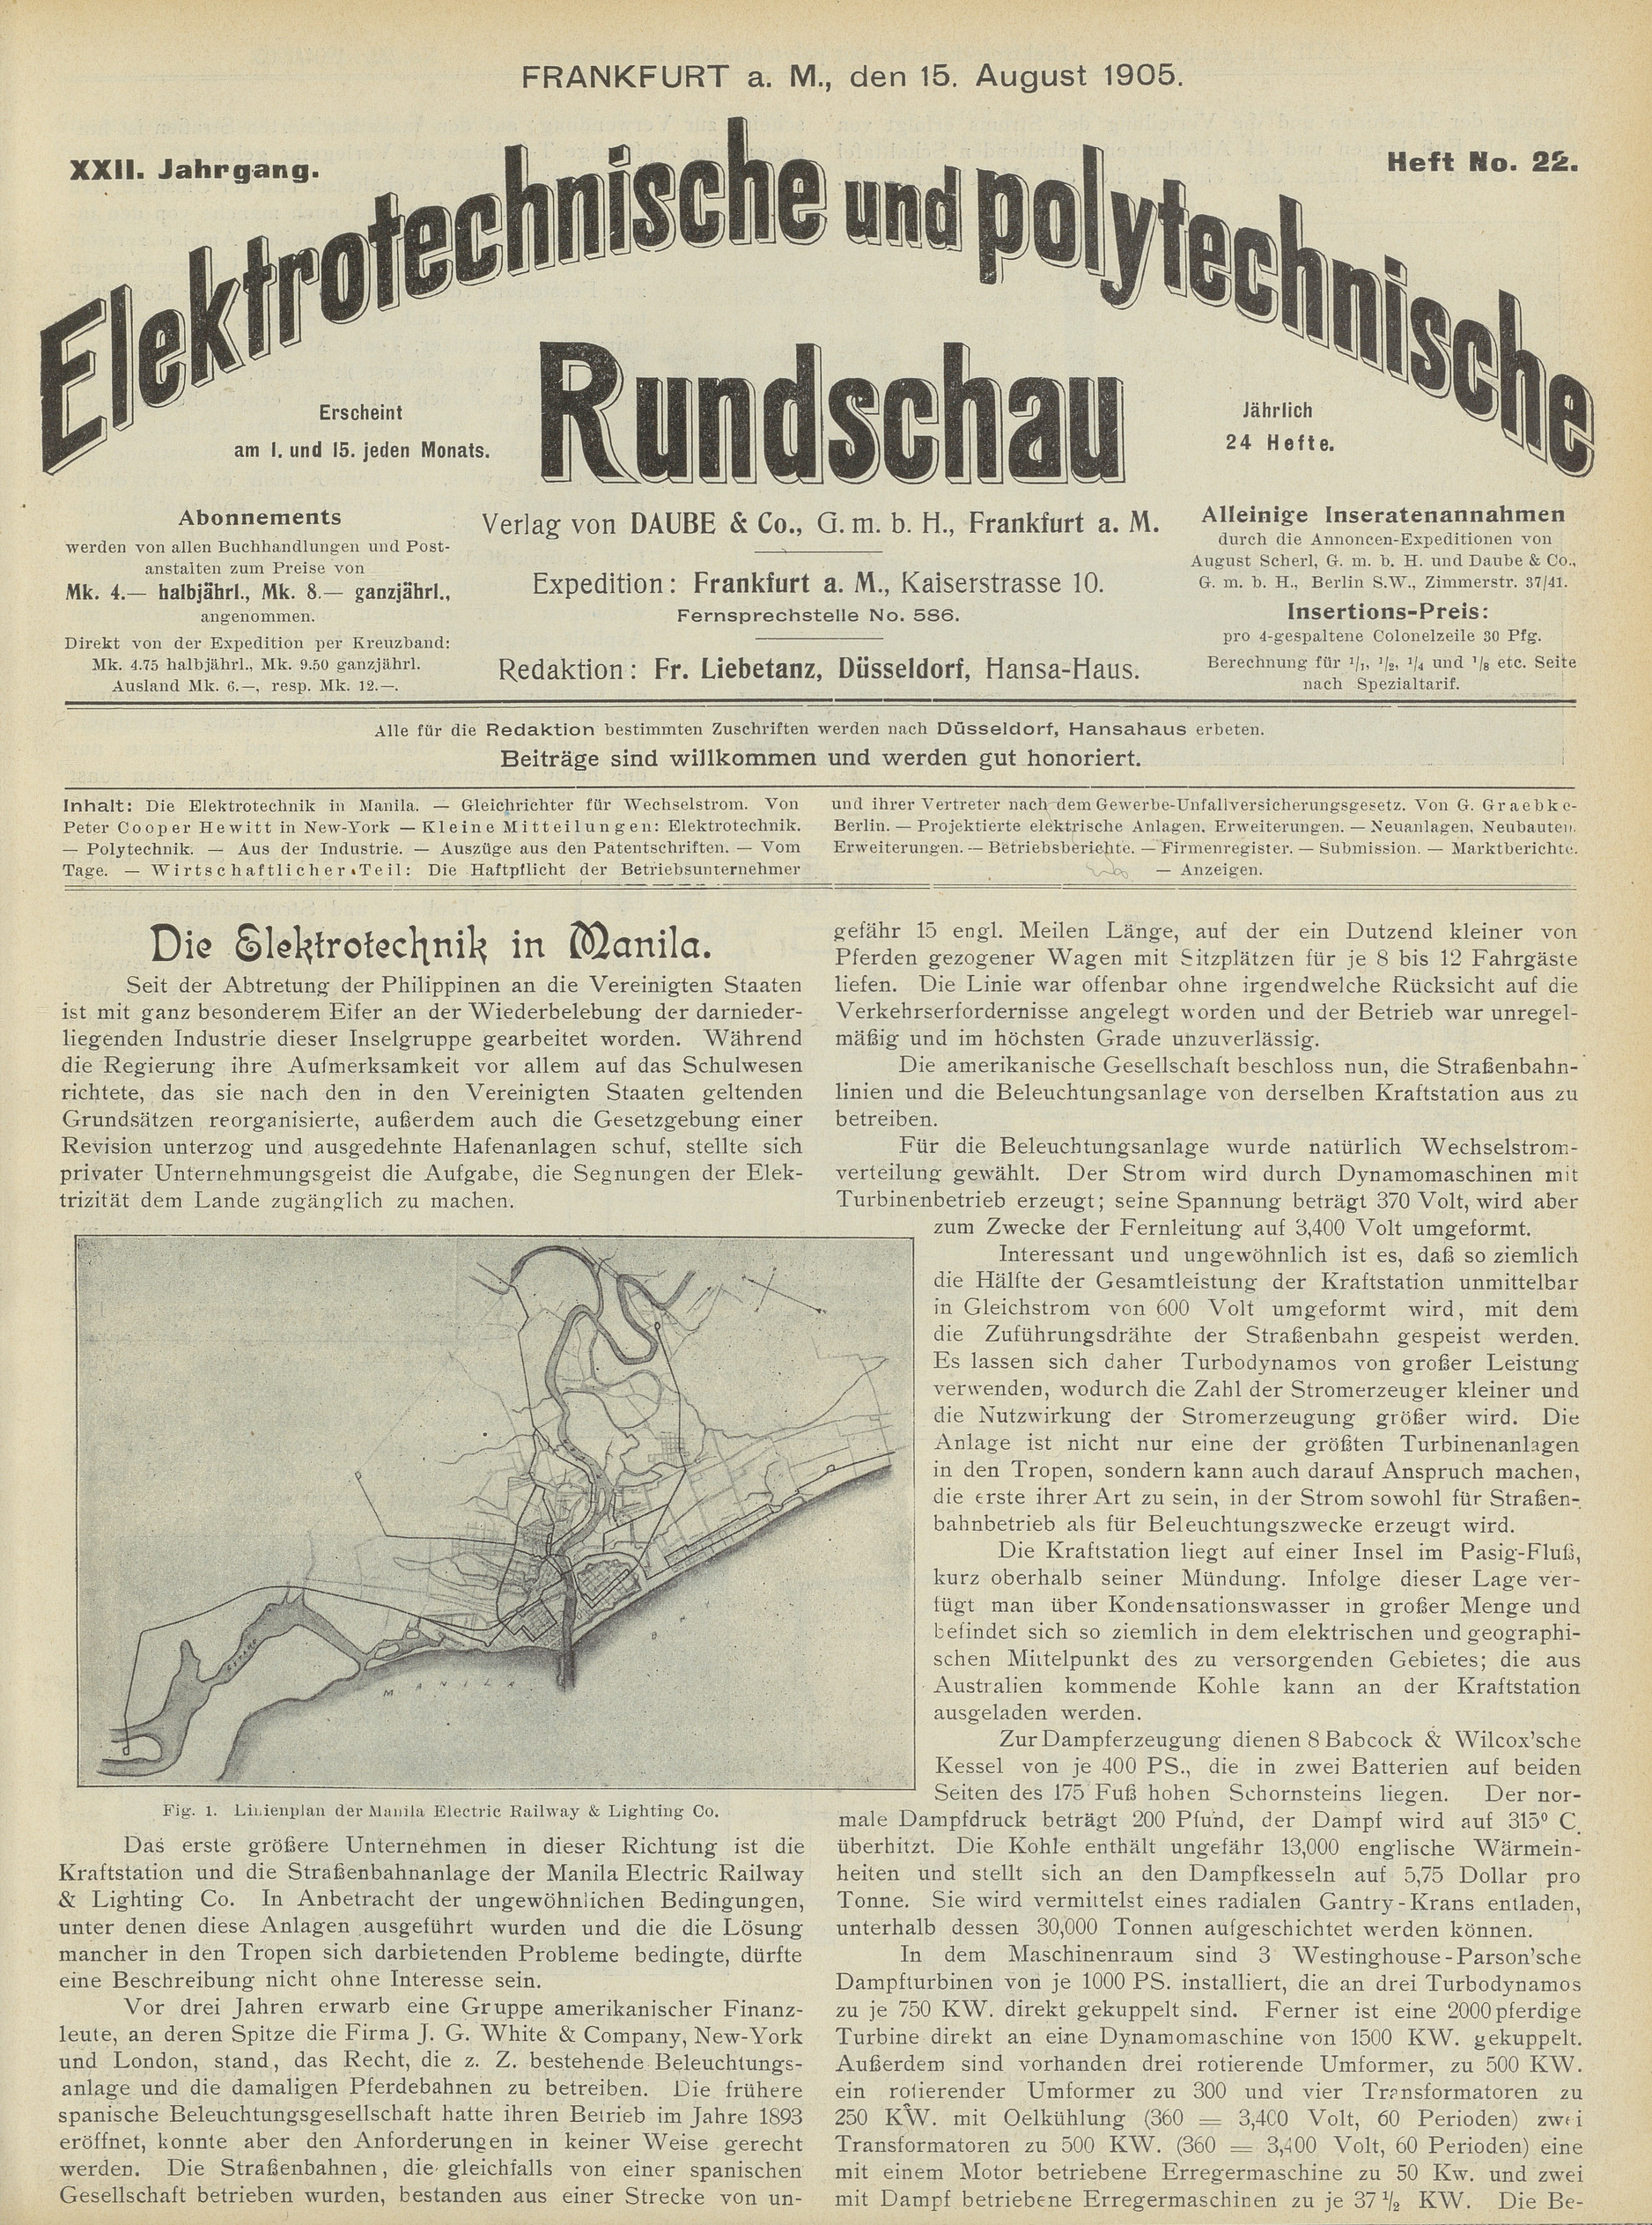 Elektrotechnische und polytechnische Rundschau, XXII. Jahrgang, Heft No. 22